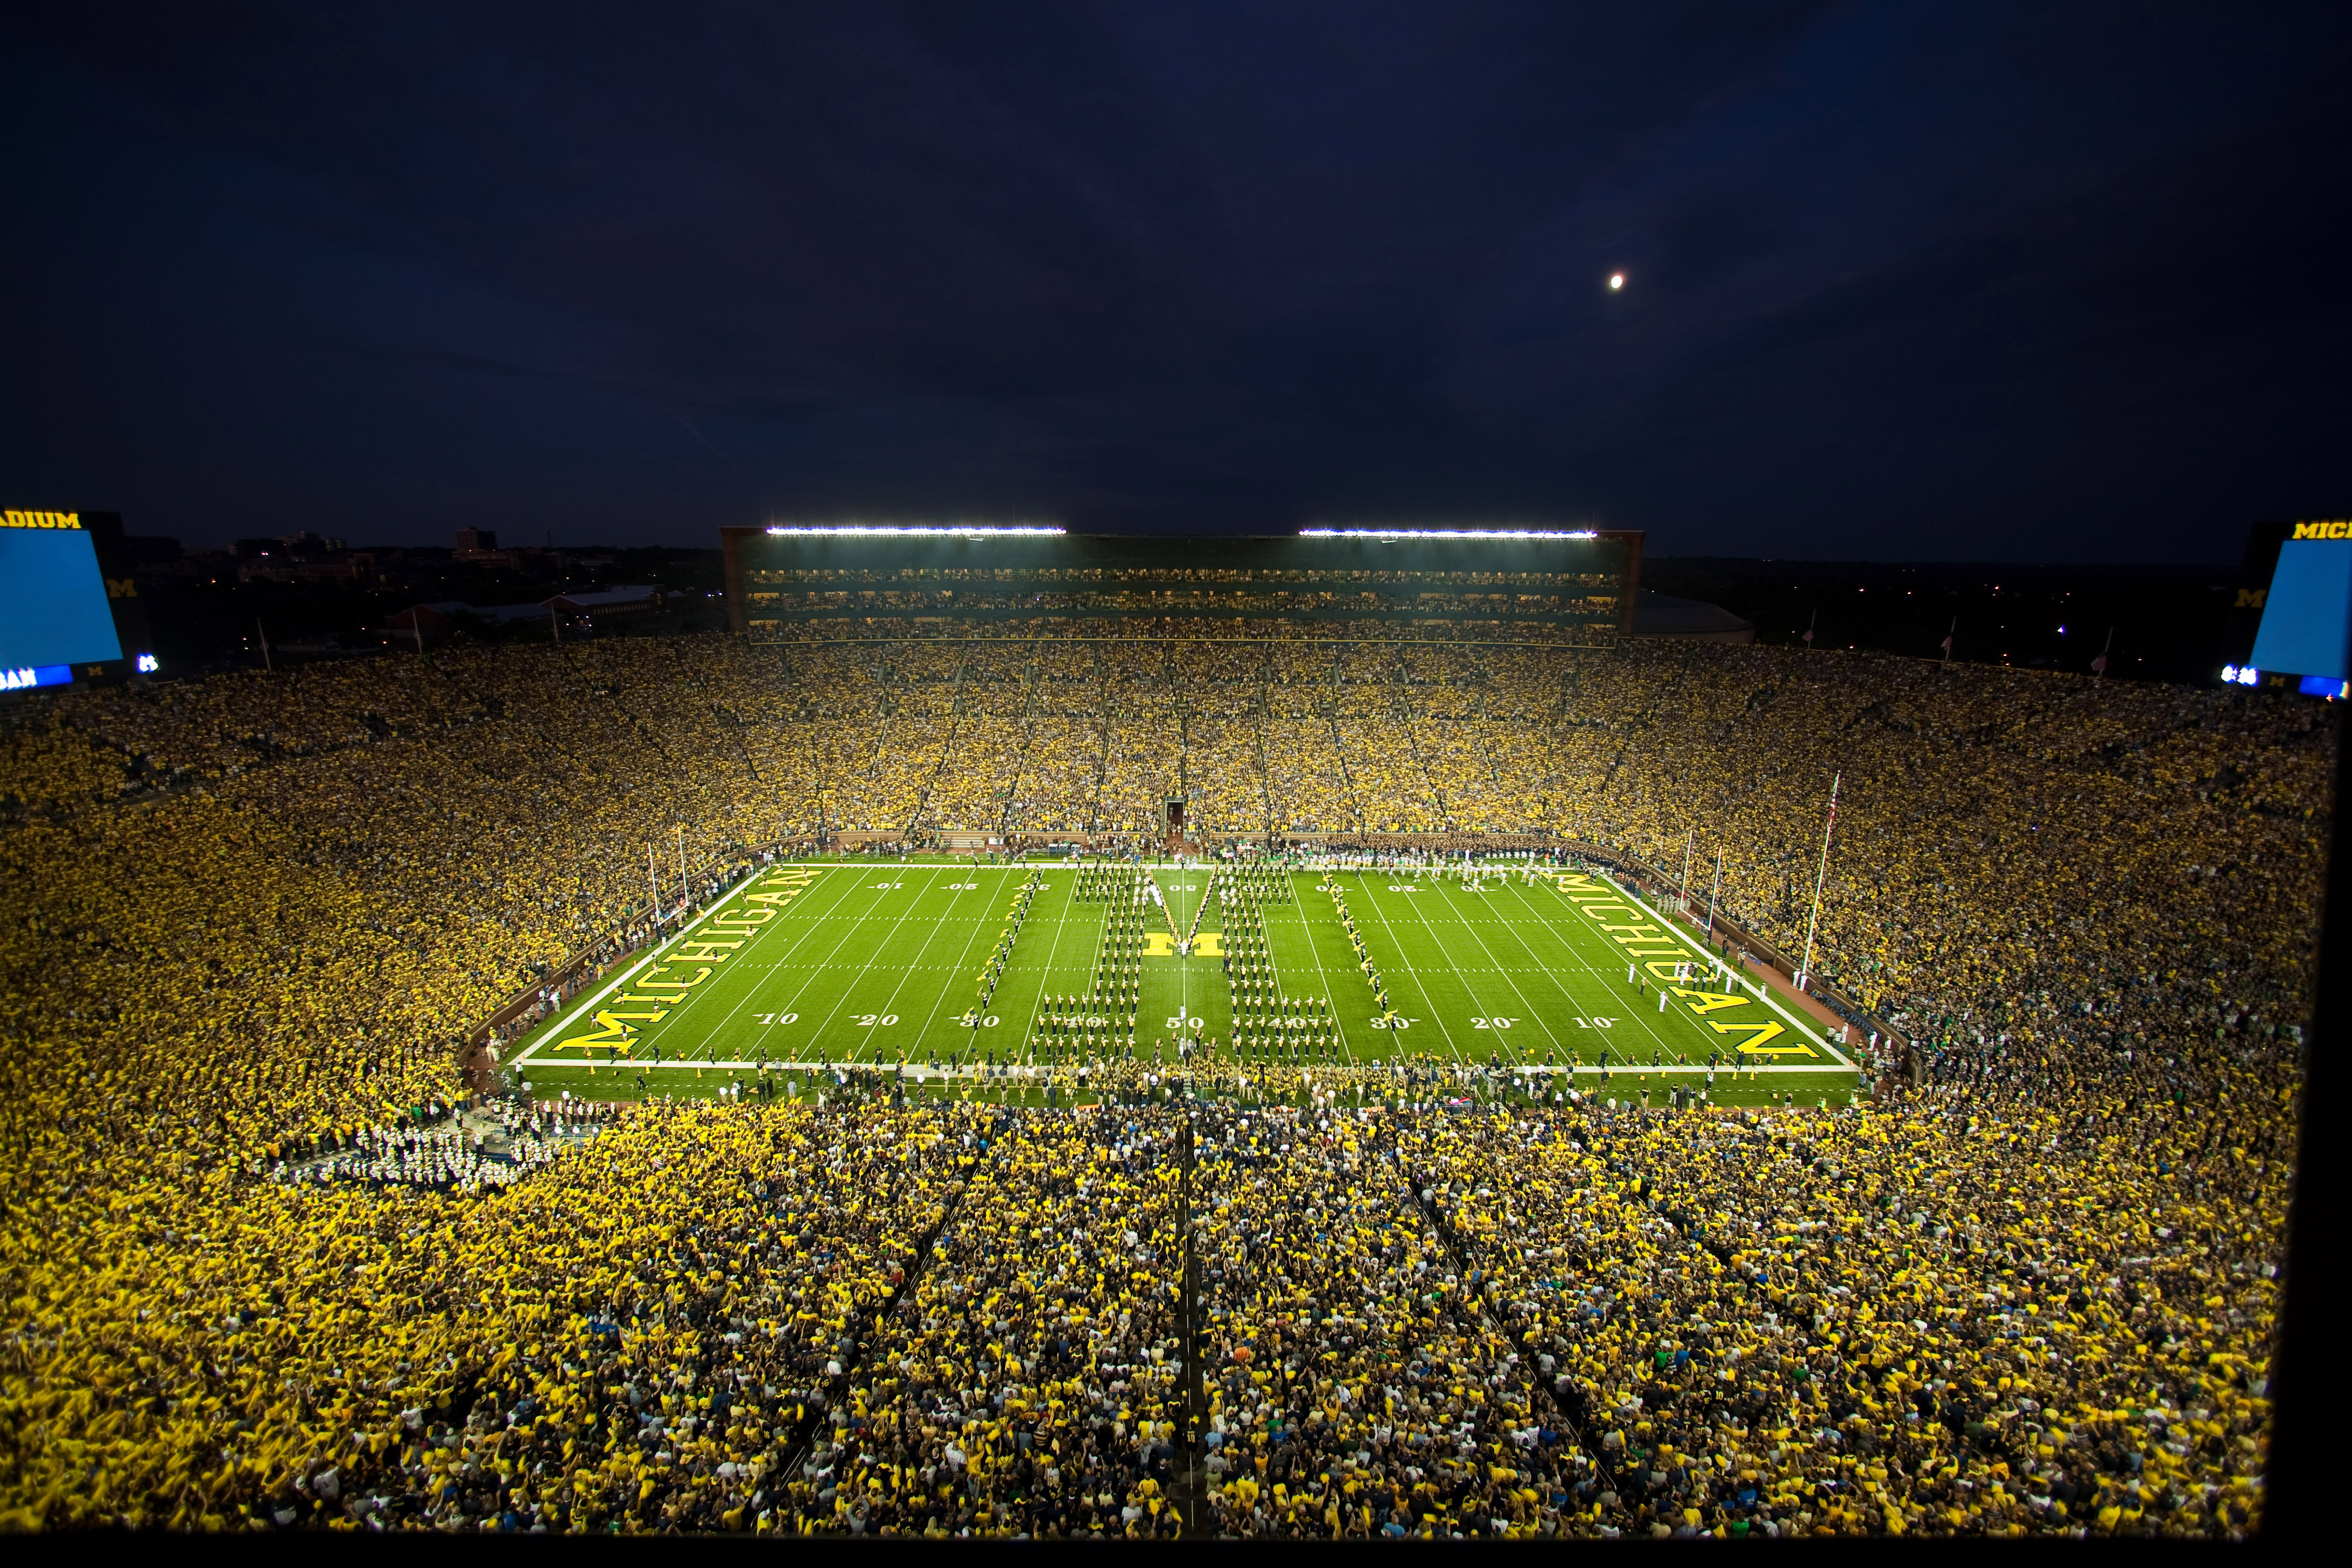 Michigan-stadium-night-game-52.jpg